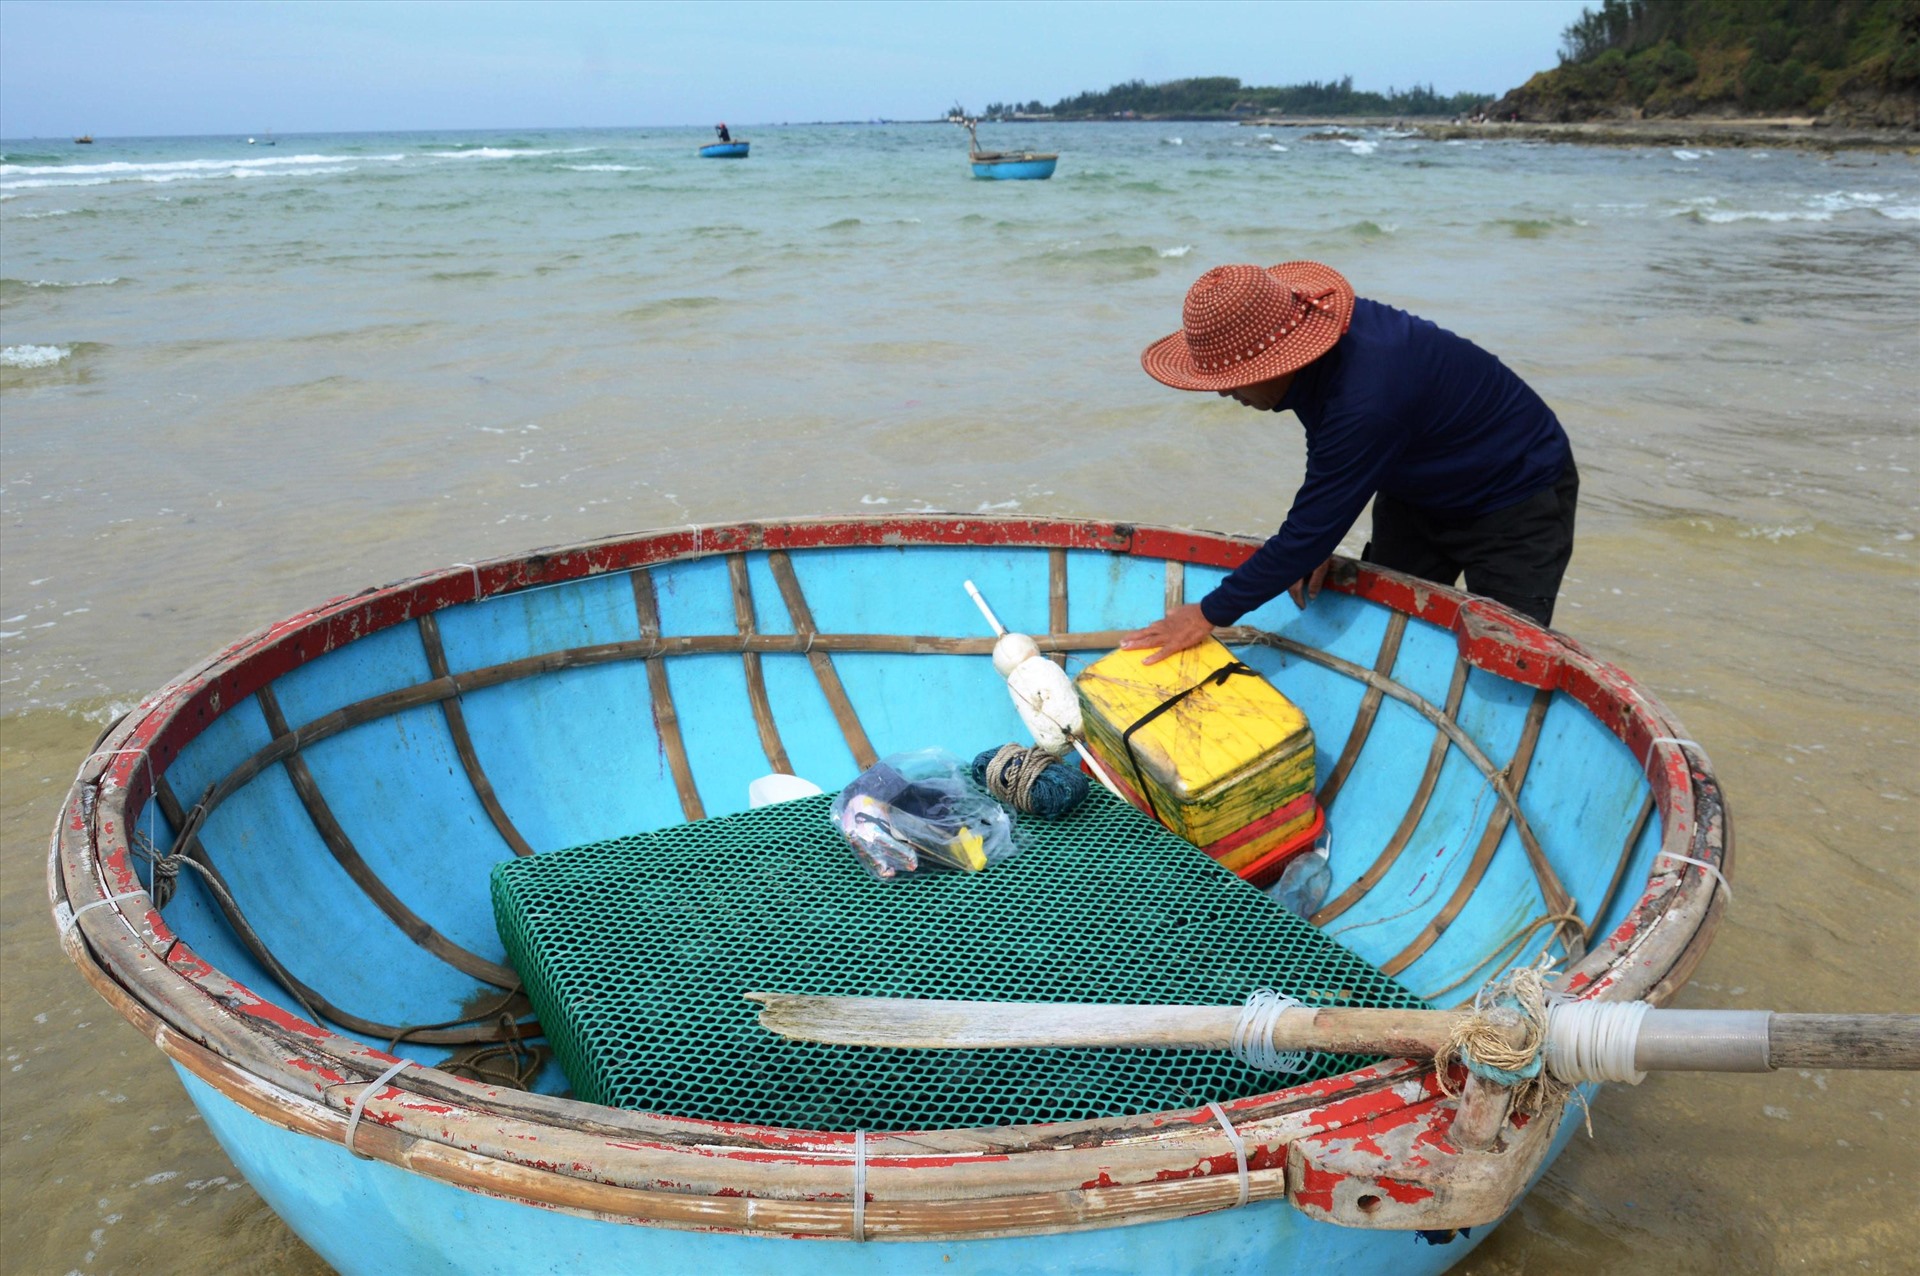 Vịnh Việt Thanh nơi Nhà máy bột giấy VNT 19 dự kiến đặt ống xả thải là nơi khai thác hải sản của hàng nghìn người dân. Ảnh: Ngọc Viên